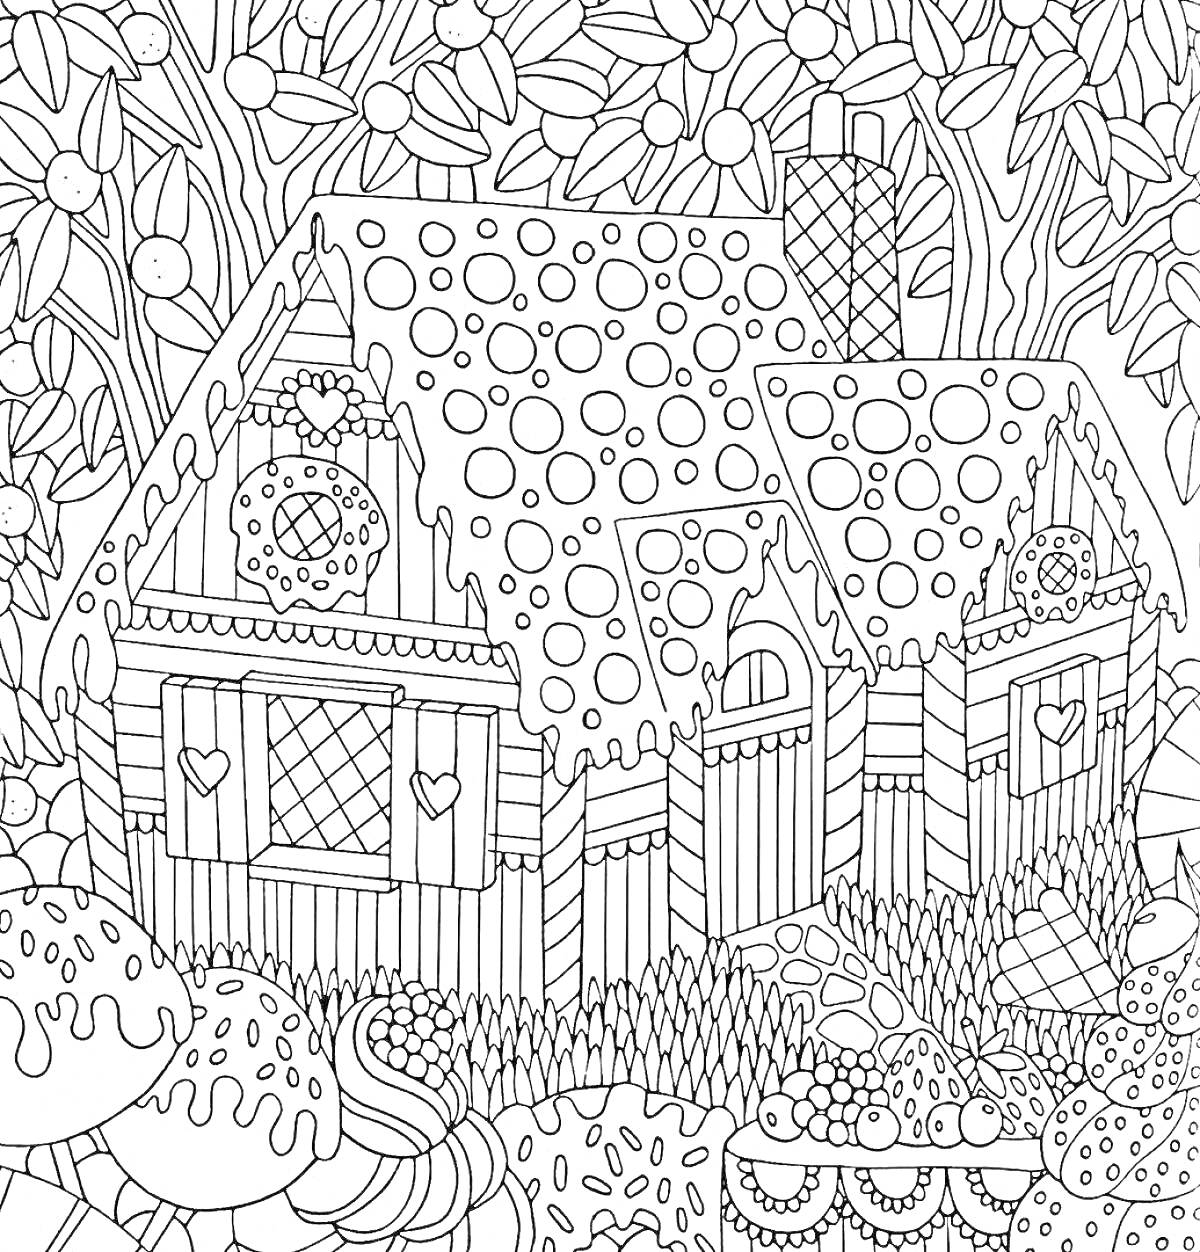 сказочный пряничный домик в лесу, окруженный растениями и крупными грибами